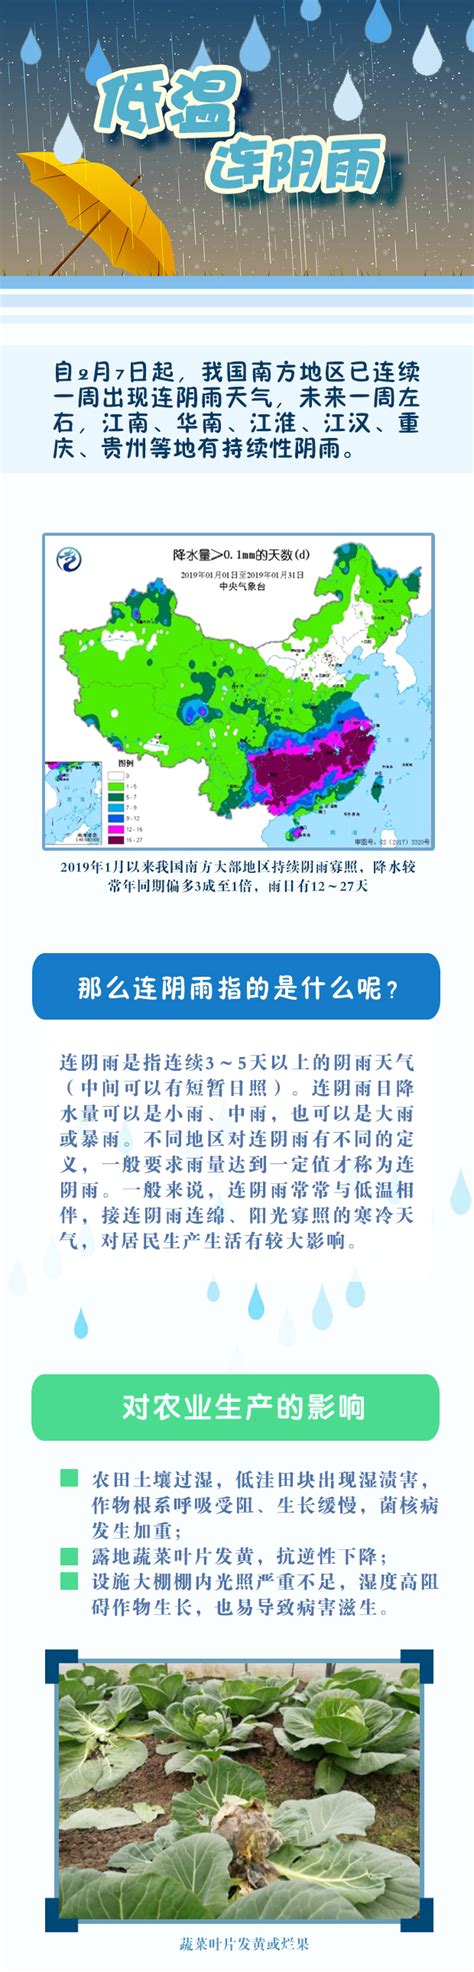 图解低温连阴雨-中国气象局政府门户网站